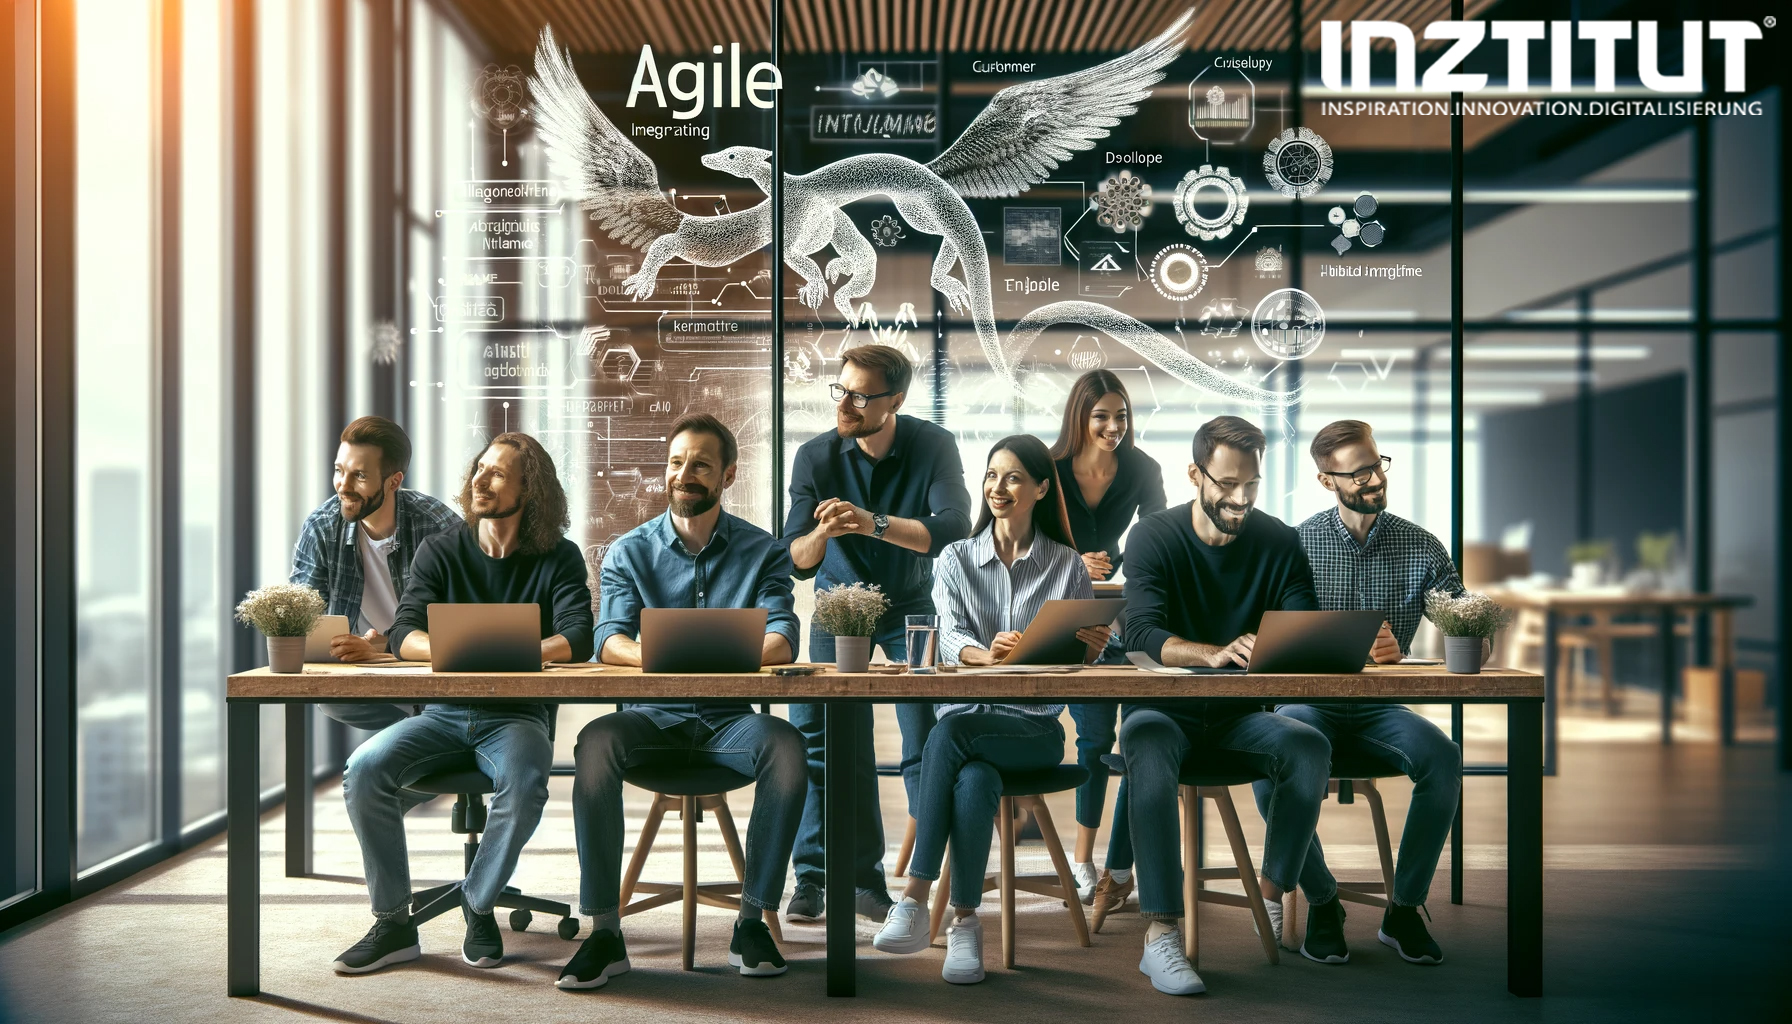 Team von agilen Softwareentwicklerinnen und -entwicklern, die die Prinzipien der agilen Entwicklung aktiv umsetzen und leben.